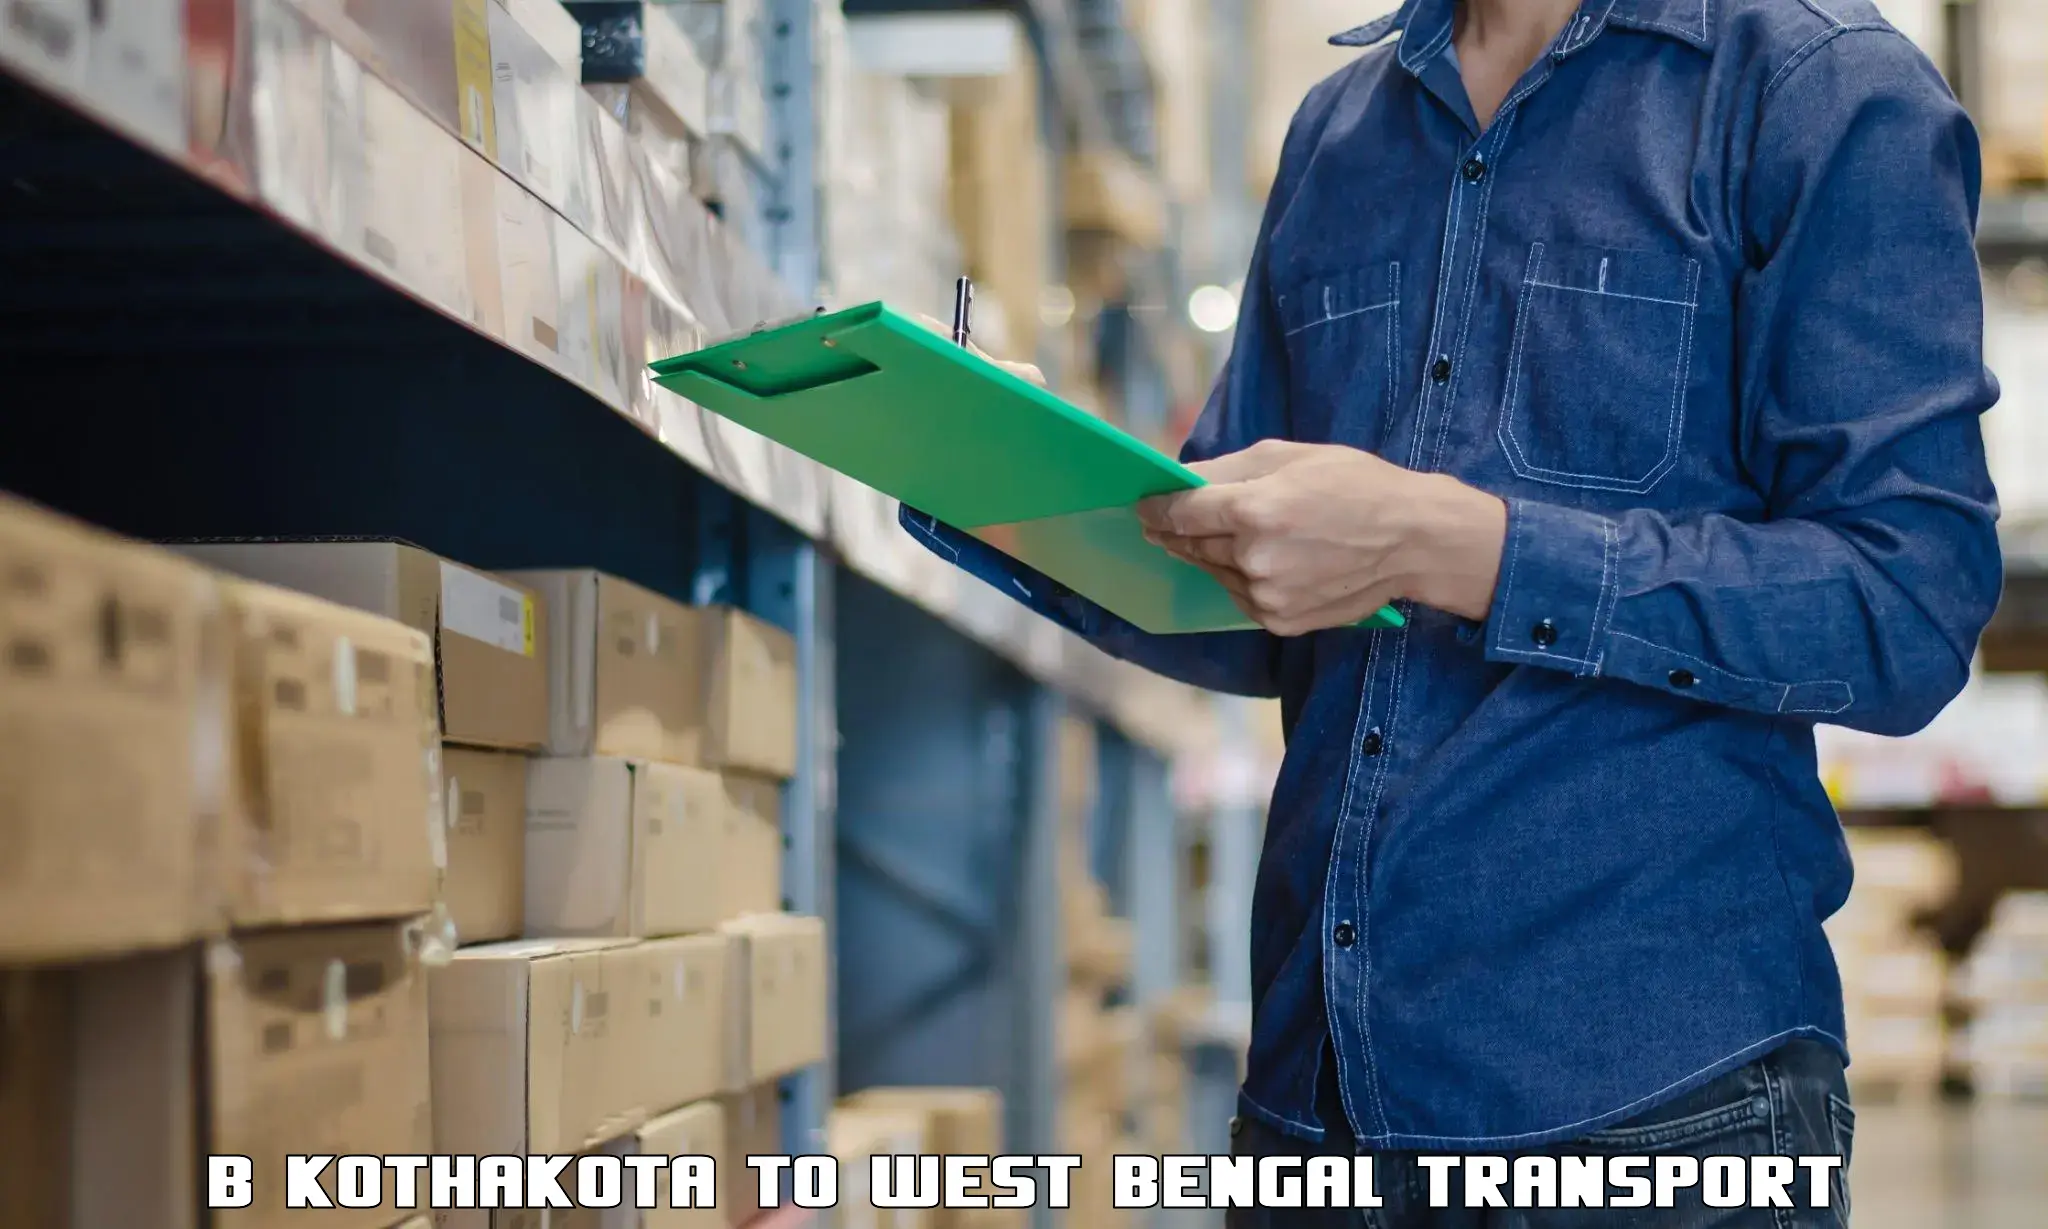 Nearest transport service B Kothakota to Swarupnagar